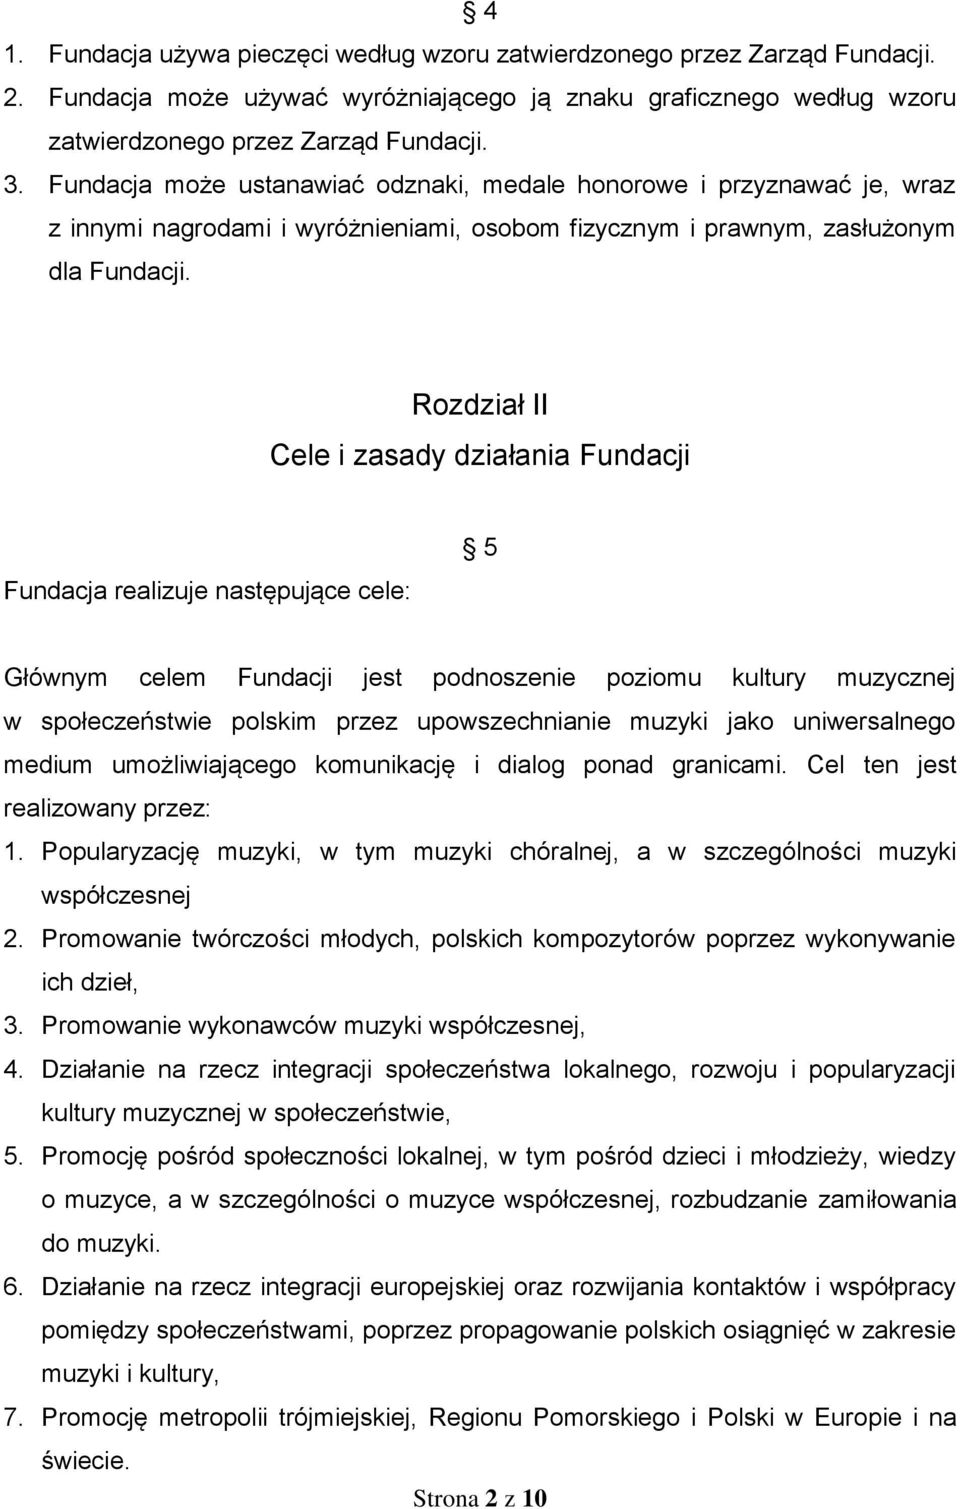 Rozdział II Cele i zasady działania Fundacji Fundacja realizuje następujące cele: 5 Głównym celem Fundacji jest podnoszenie poziomu kultury muzycznej w społeczeństwie polskim przez upowszechnianie